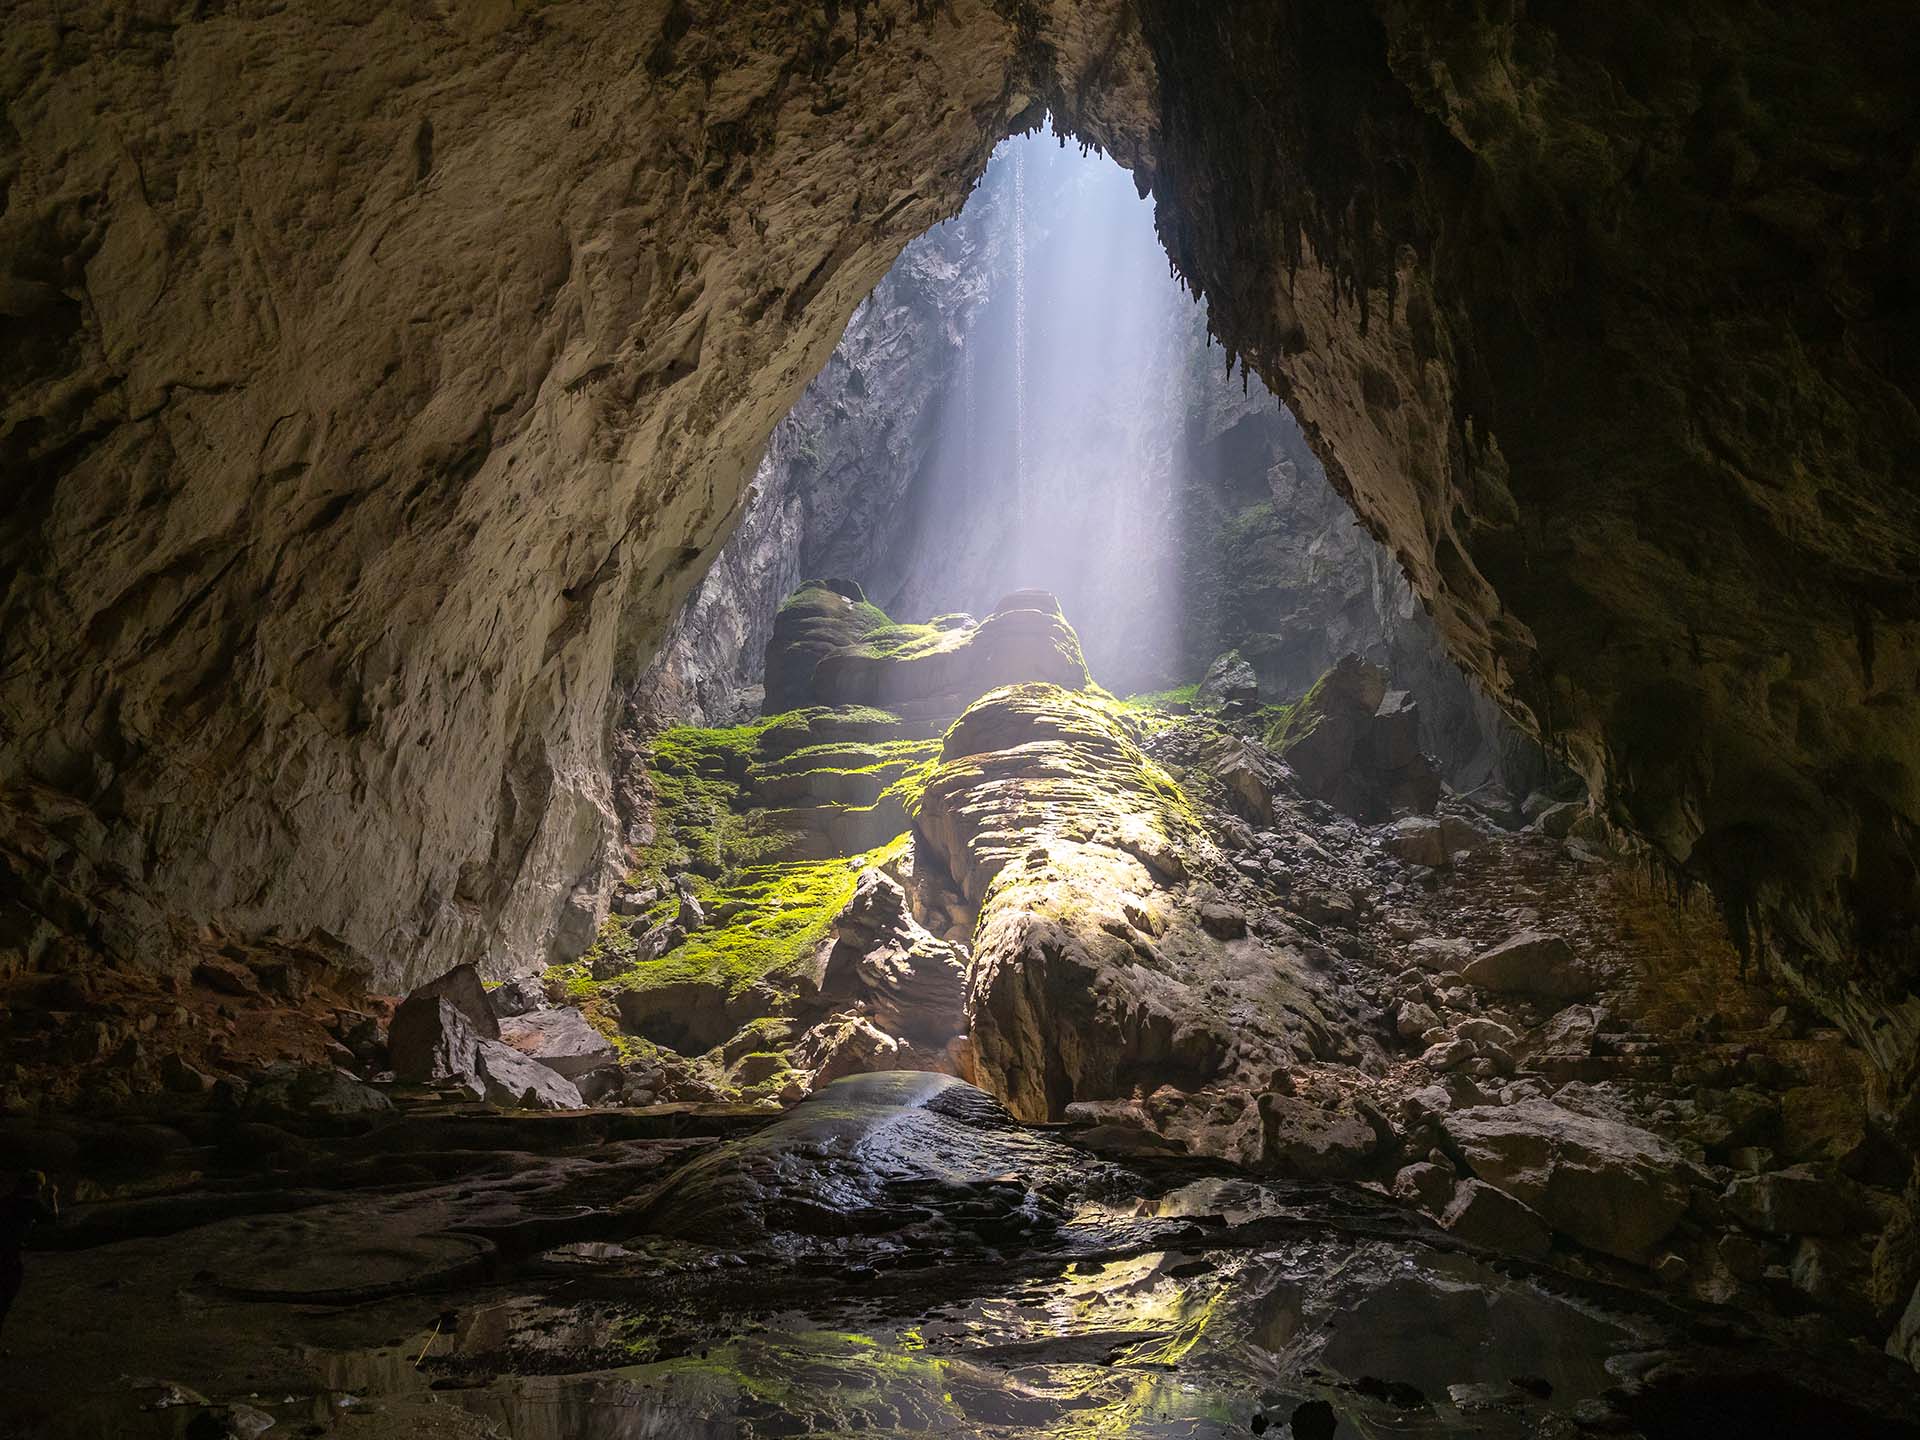 Se estima que la cueva Hang Son Doong en la provincia de Quang Binh, en el parque nacional Phong Nha-Kẻ Bàng, en Vietnam, tiene entre 400 y 450 millones de años, pero solo se exploró por primera vez en 2009. La cueva tiene 5 kilómetros de largo y tramos de hasta 200 metros de altura y 150 metros de ancho y es lo suficientemente grande como para tener un sistema meteorológico independiente del mundo exterior. La cueva incluso tiene sus propias nubes, selvas y ríos, y parece casi un mundo de fantasía al que los humanos no han tocado